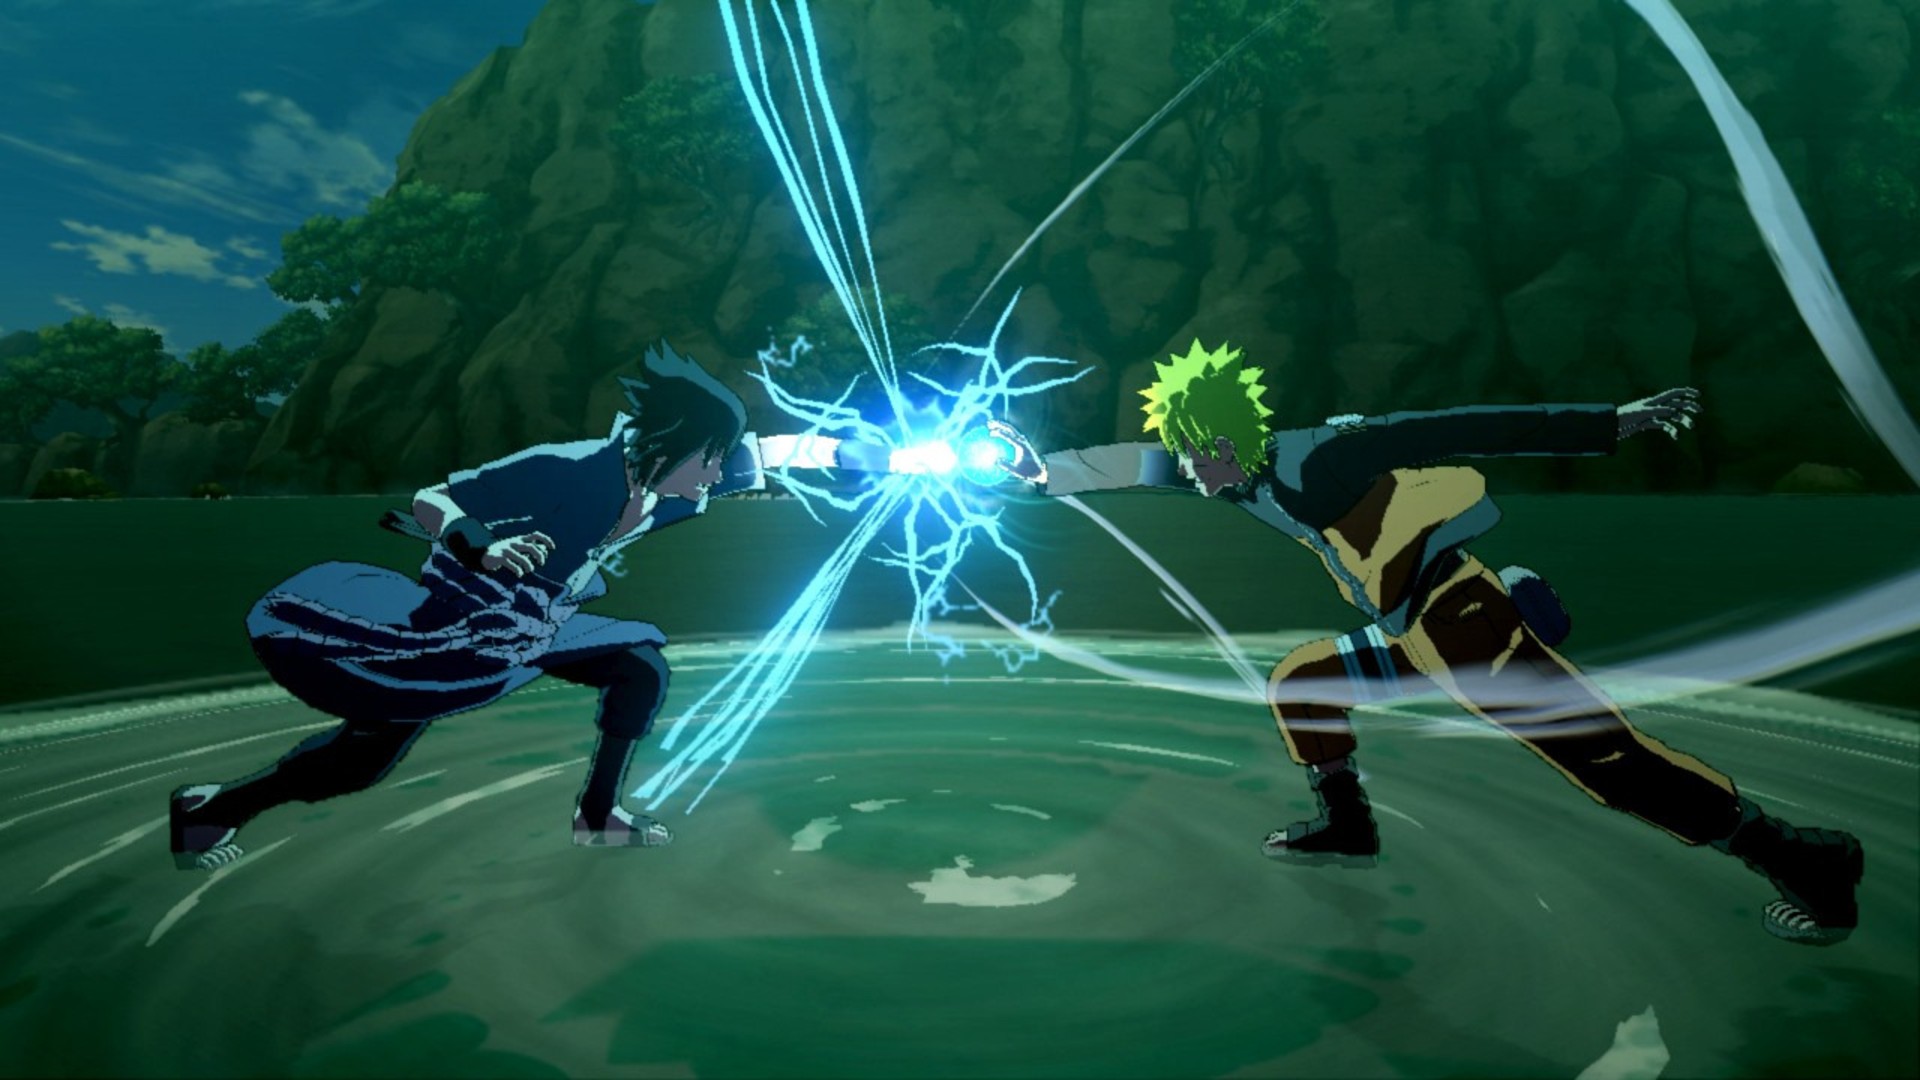 Meilleurs jeux d'anime: Naruto Shippuden: Ultimate Ninja Storm 3 Full Burst. L'image montre deux combattants dont les poings sont entrés en collision et ont généré de l'électricité